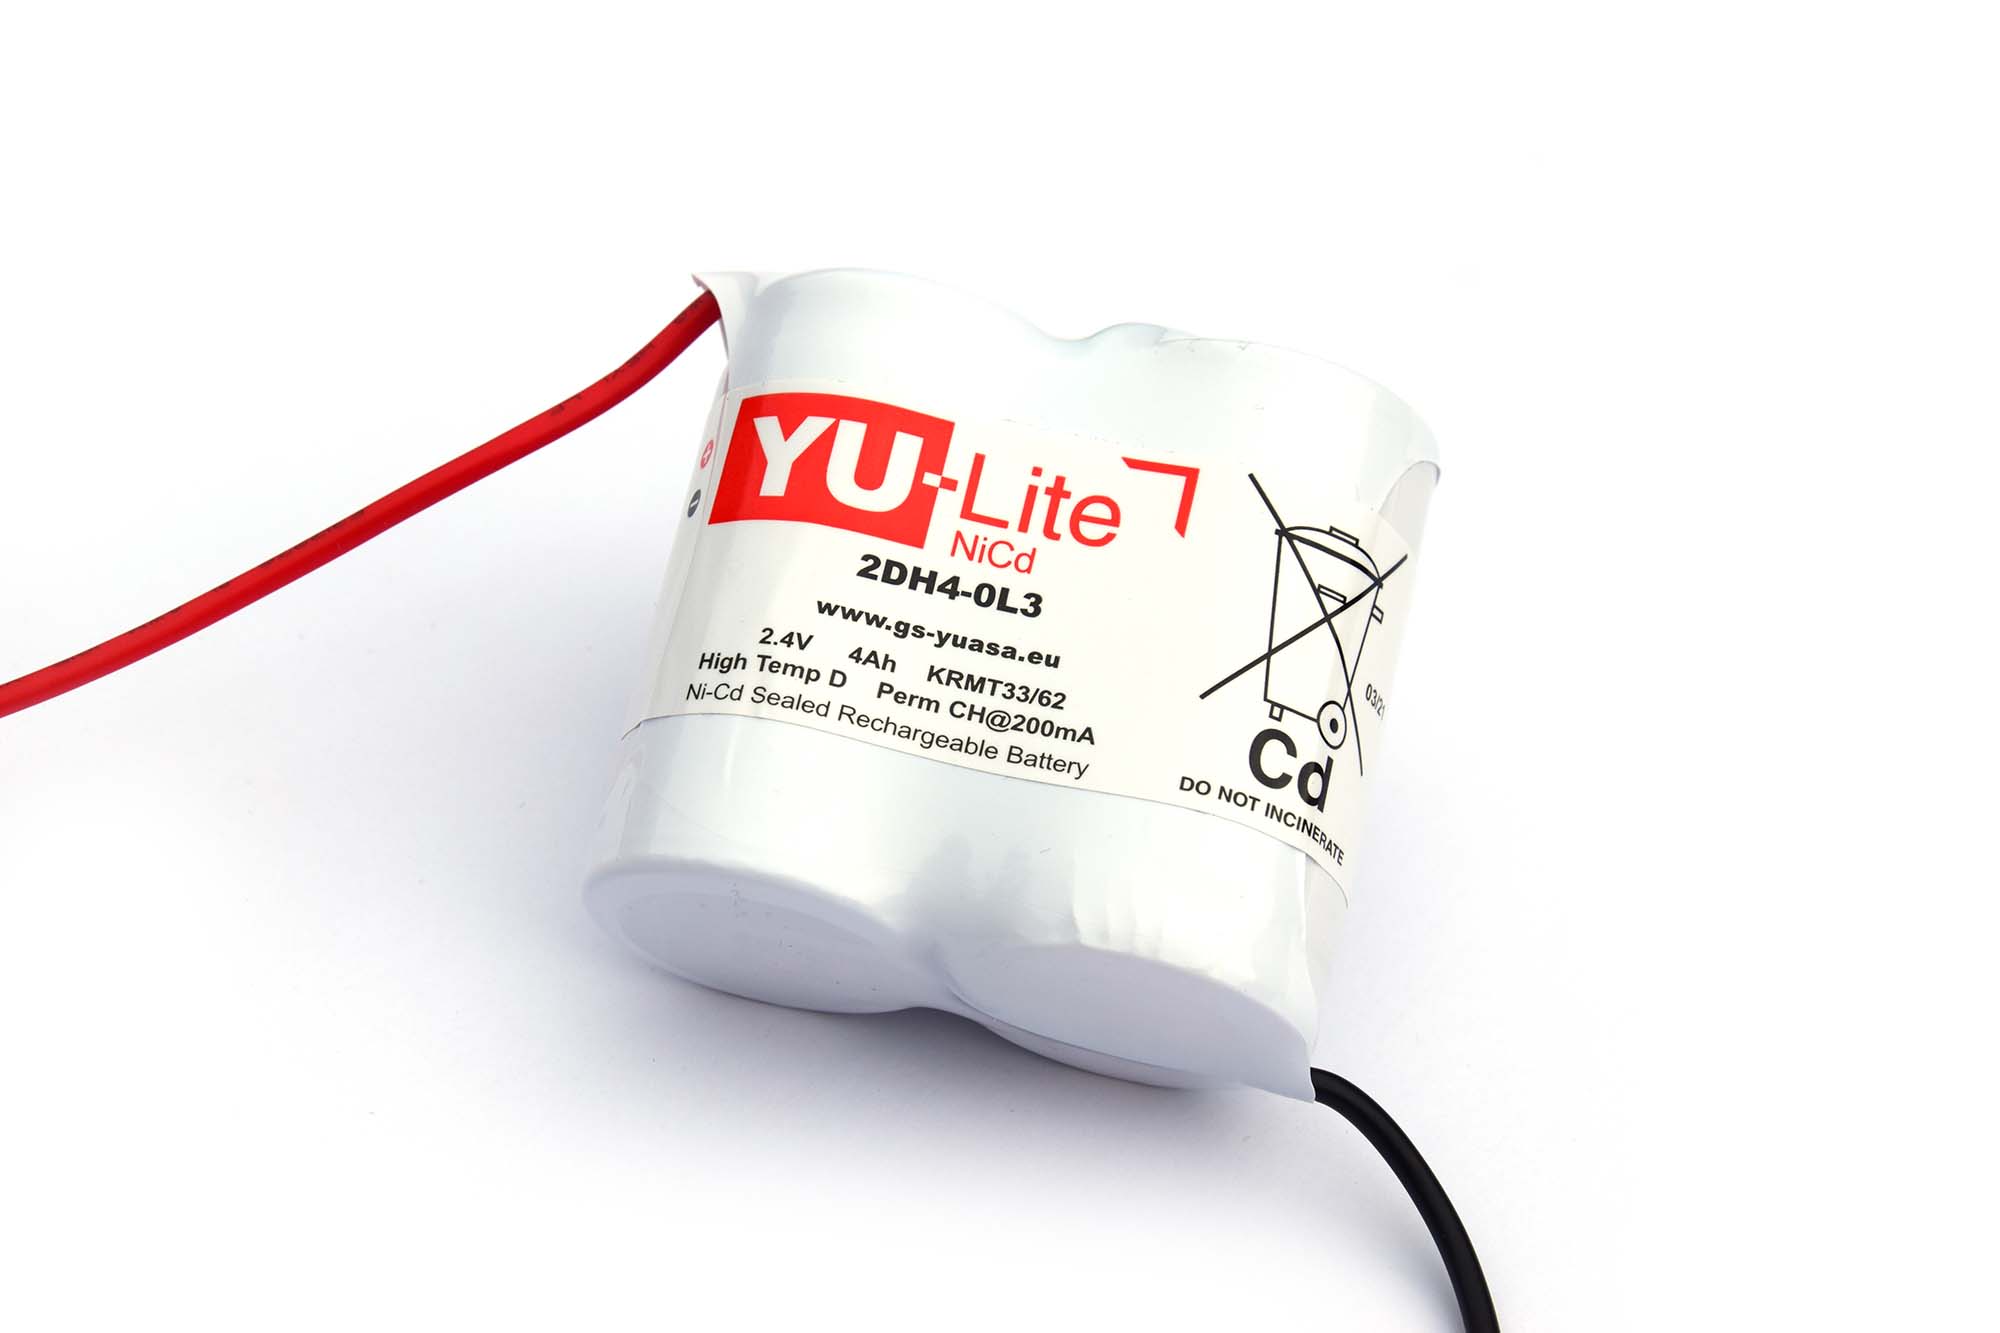 Yuasa NiCd 2.4V, D Battery